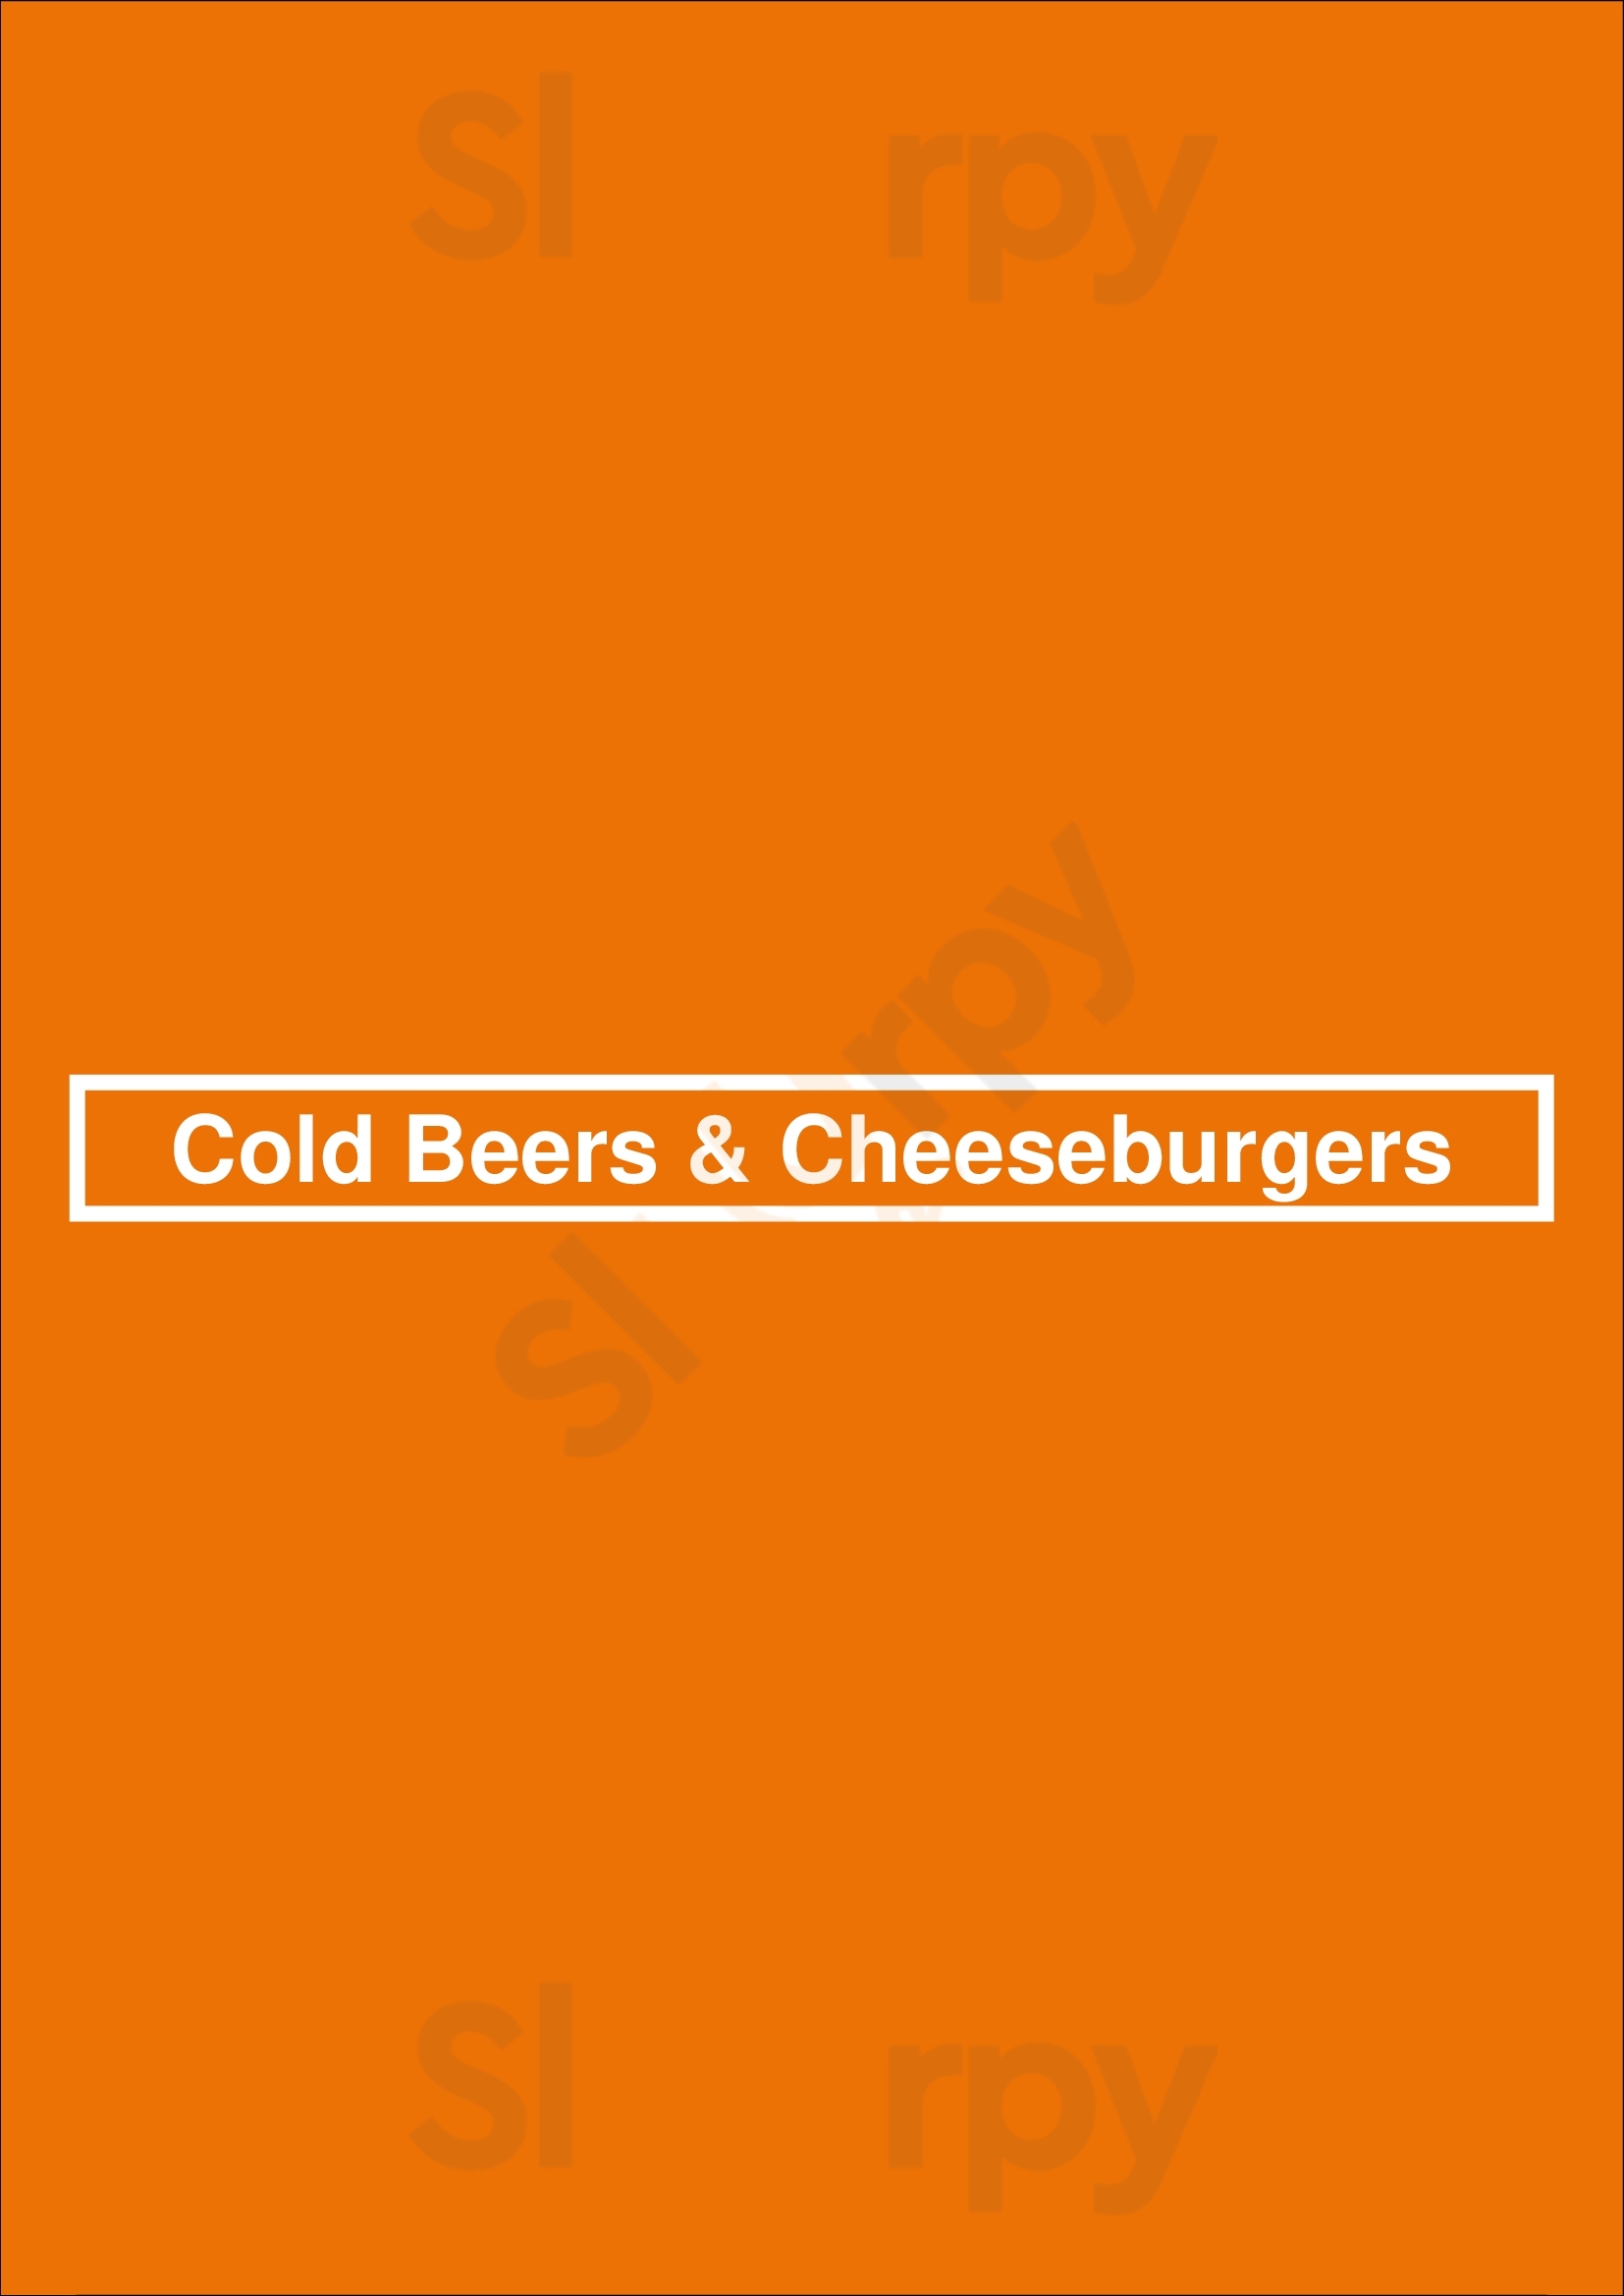 Cold Beers & Cheeseburgers Scottsdale Menu - 1